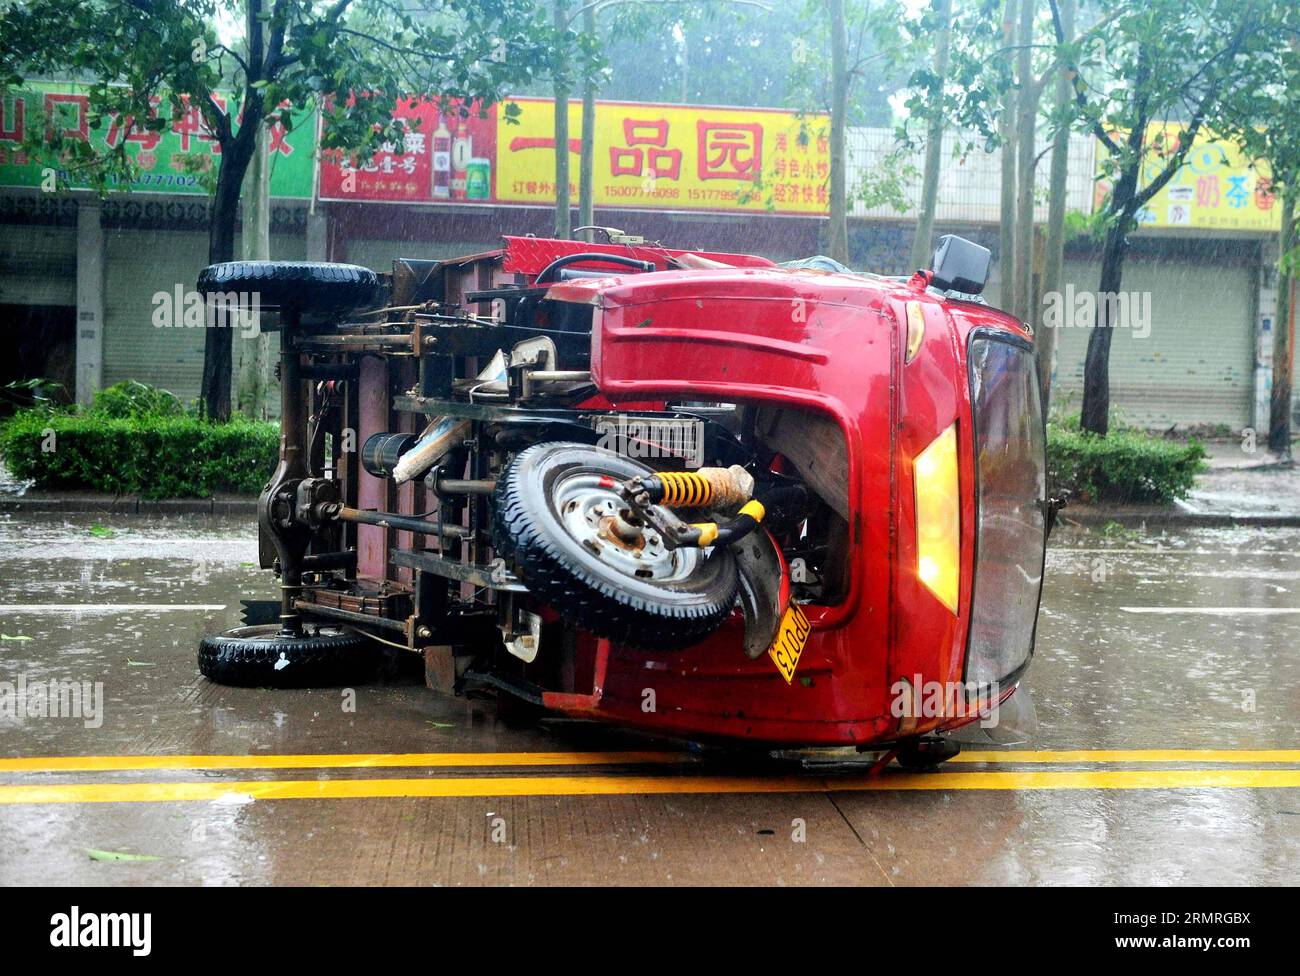 (140719) -- QINZHOU, 19. Juli 2014 (Xinhua) -- Foto vom 19. Juli 2014 zeigt ein umgestürztes Fahrzeug aufgrund des Supertyphoons Rammasun in der Stadt Qinzhou der autonomen Region Guangxi Zhuang. Der Taifun Rammasun, der neunte in diesem Jahr und der stärkste seit Jahrzehnten, machte am Samstag um 7:10 Uhr im südwestchinesischen Guangxi seine letzte Landzunge und packte Stürme von bis zu 48 Metern pro Sekunde, sagte das National Meteorological Center (NMC) in einer Erklärung. (Xinhua/Zhang Ailin) (wf) CHINA-GUANGXI-QINZHOU-TYPHOON RAMMASUN (CN) PUBLICATIONxNOTxINxCHN QINZHOU 19. Juli 2014 XINHUA Foto aufgenommen AM 19. Juli 201 Stockfoto